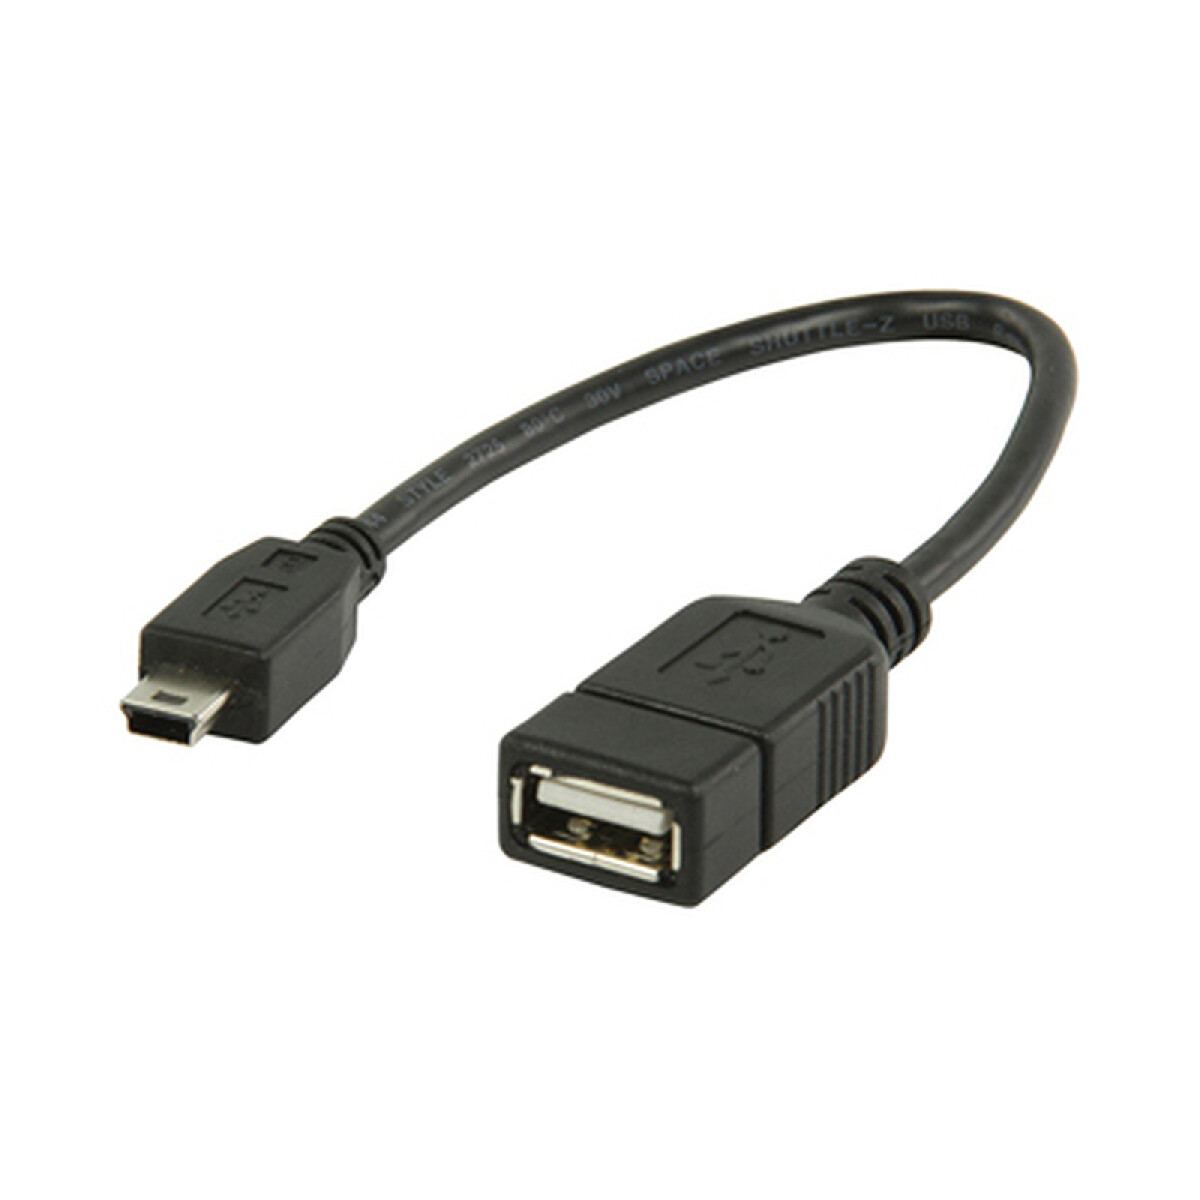 Cable adaptador USB a USB Mini Hembra/Macho 